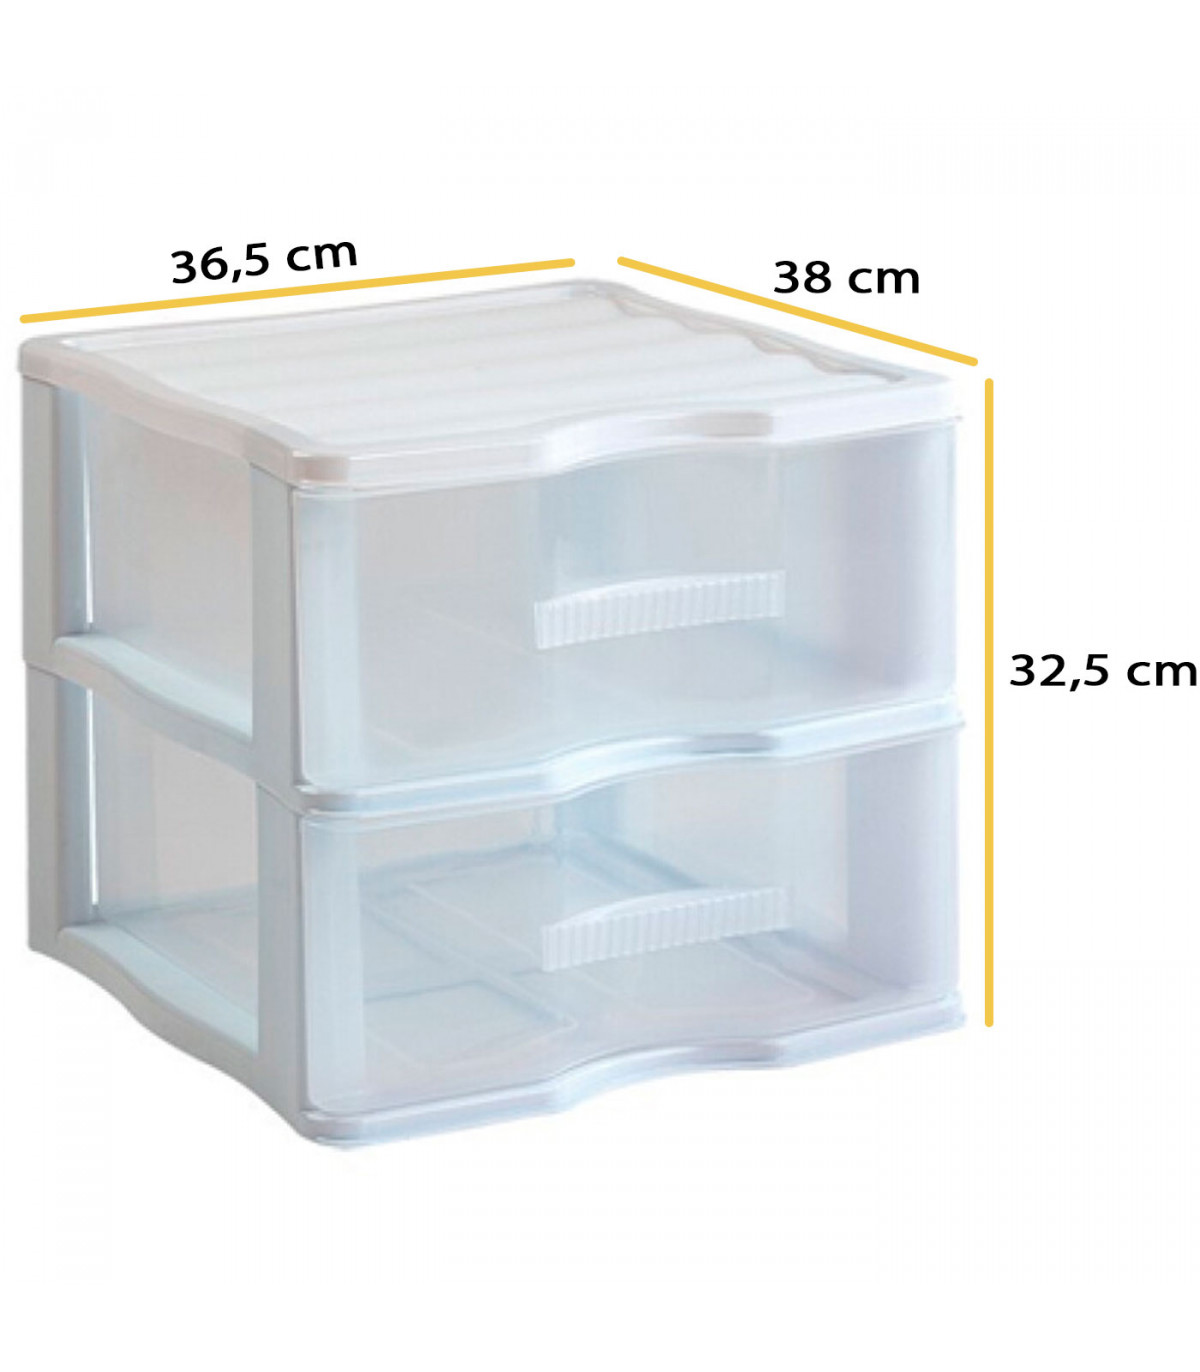 Cajonera Plástico Transparente Modular (2 cajones, 17 x 13 x 11 cm)